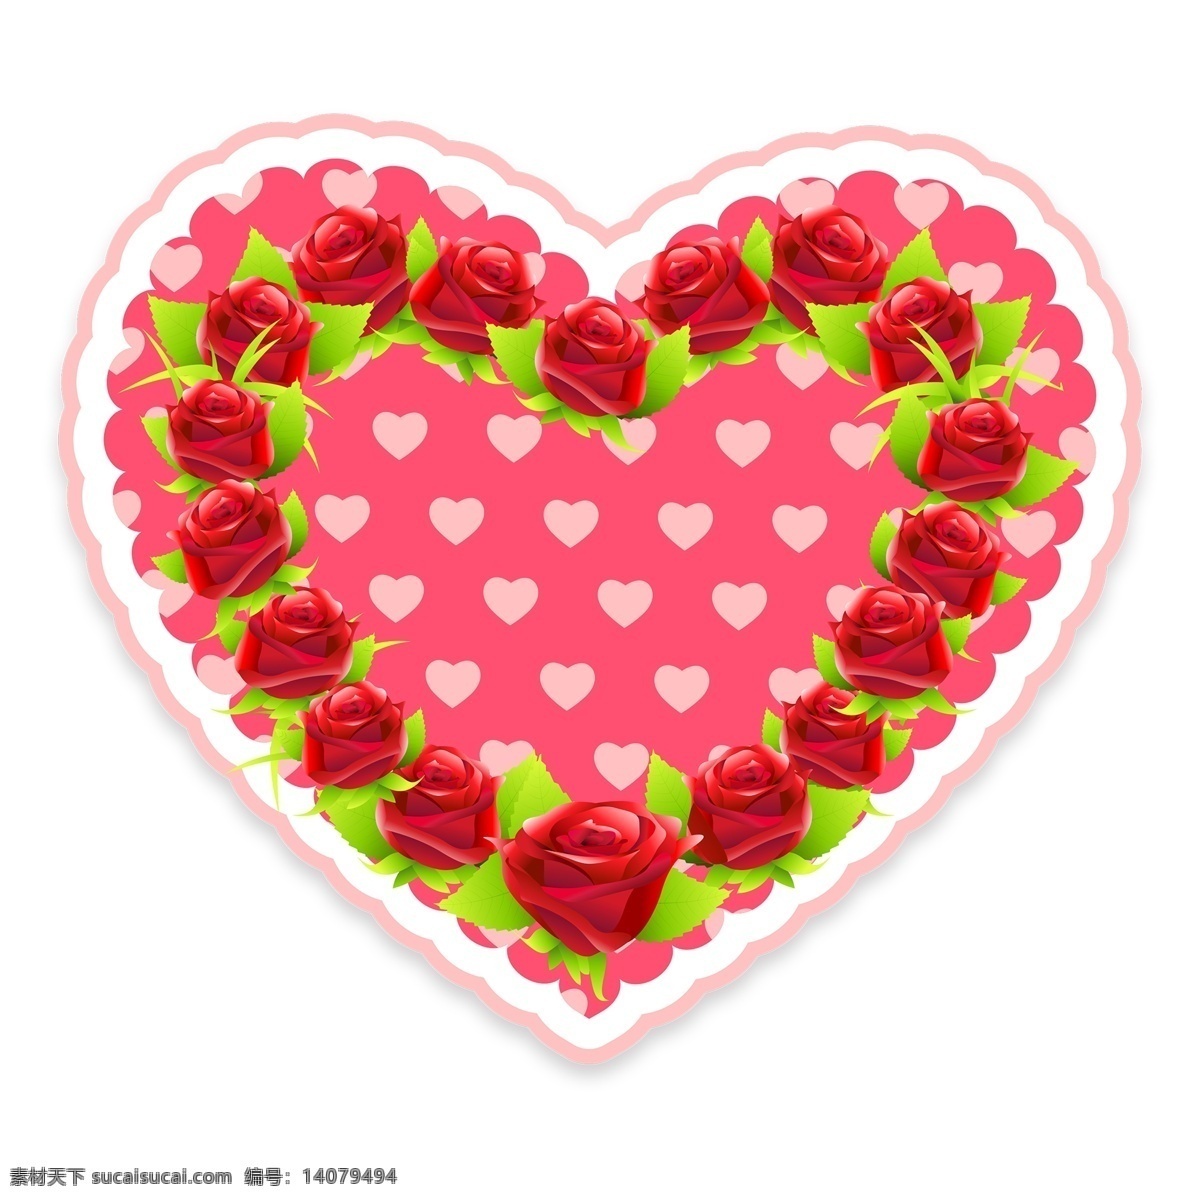 红色 玫瑰 心形 浪漫 免 抠 心 爱心 情侣 情人节 png元素 免抠元素